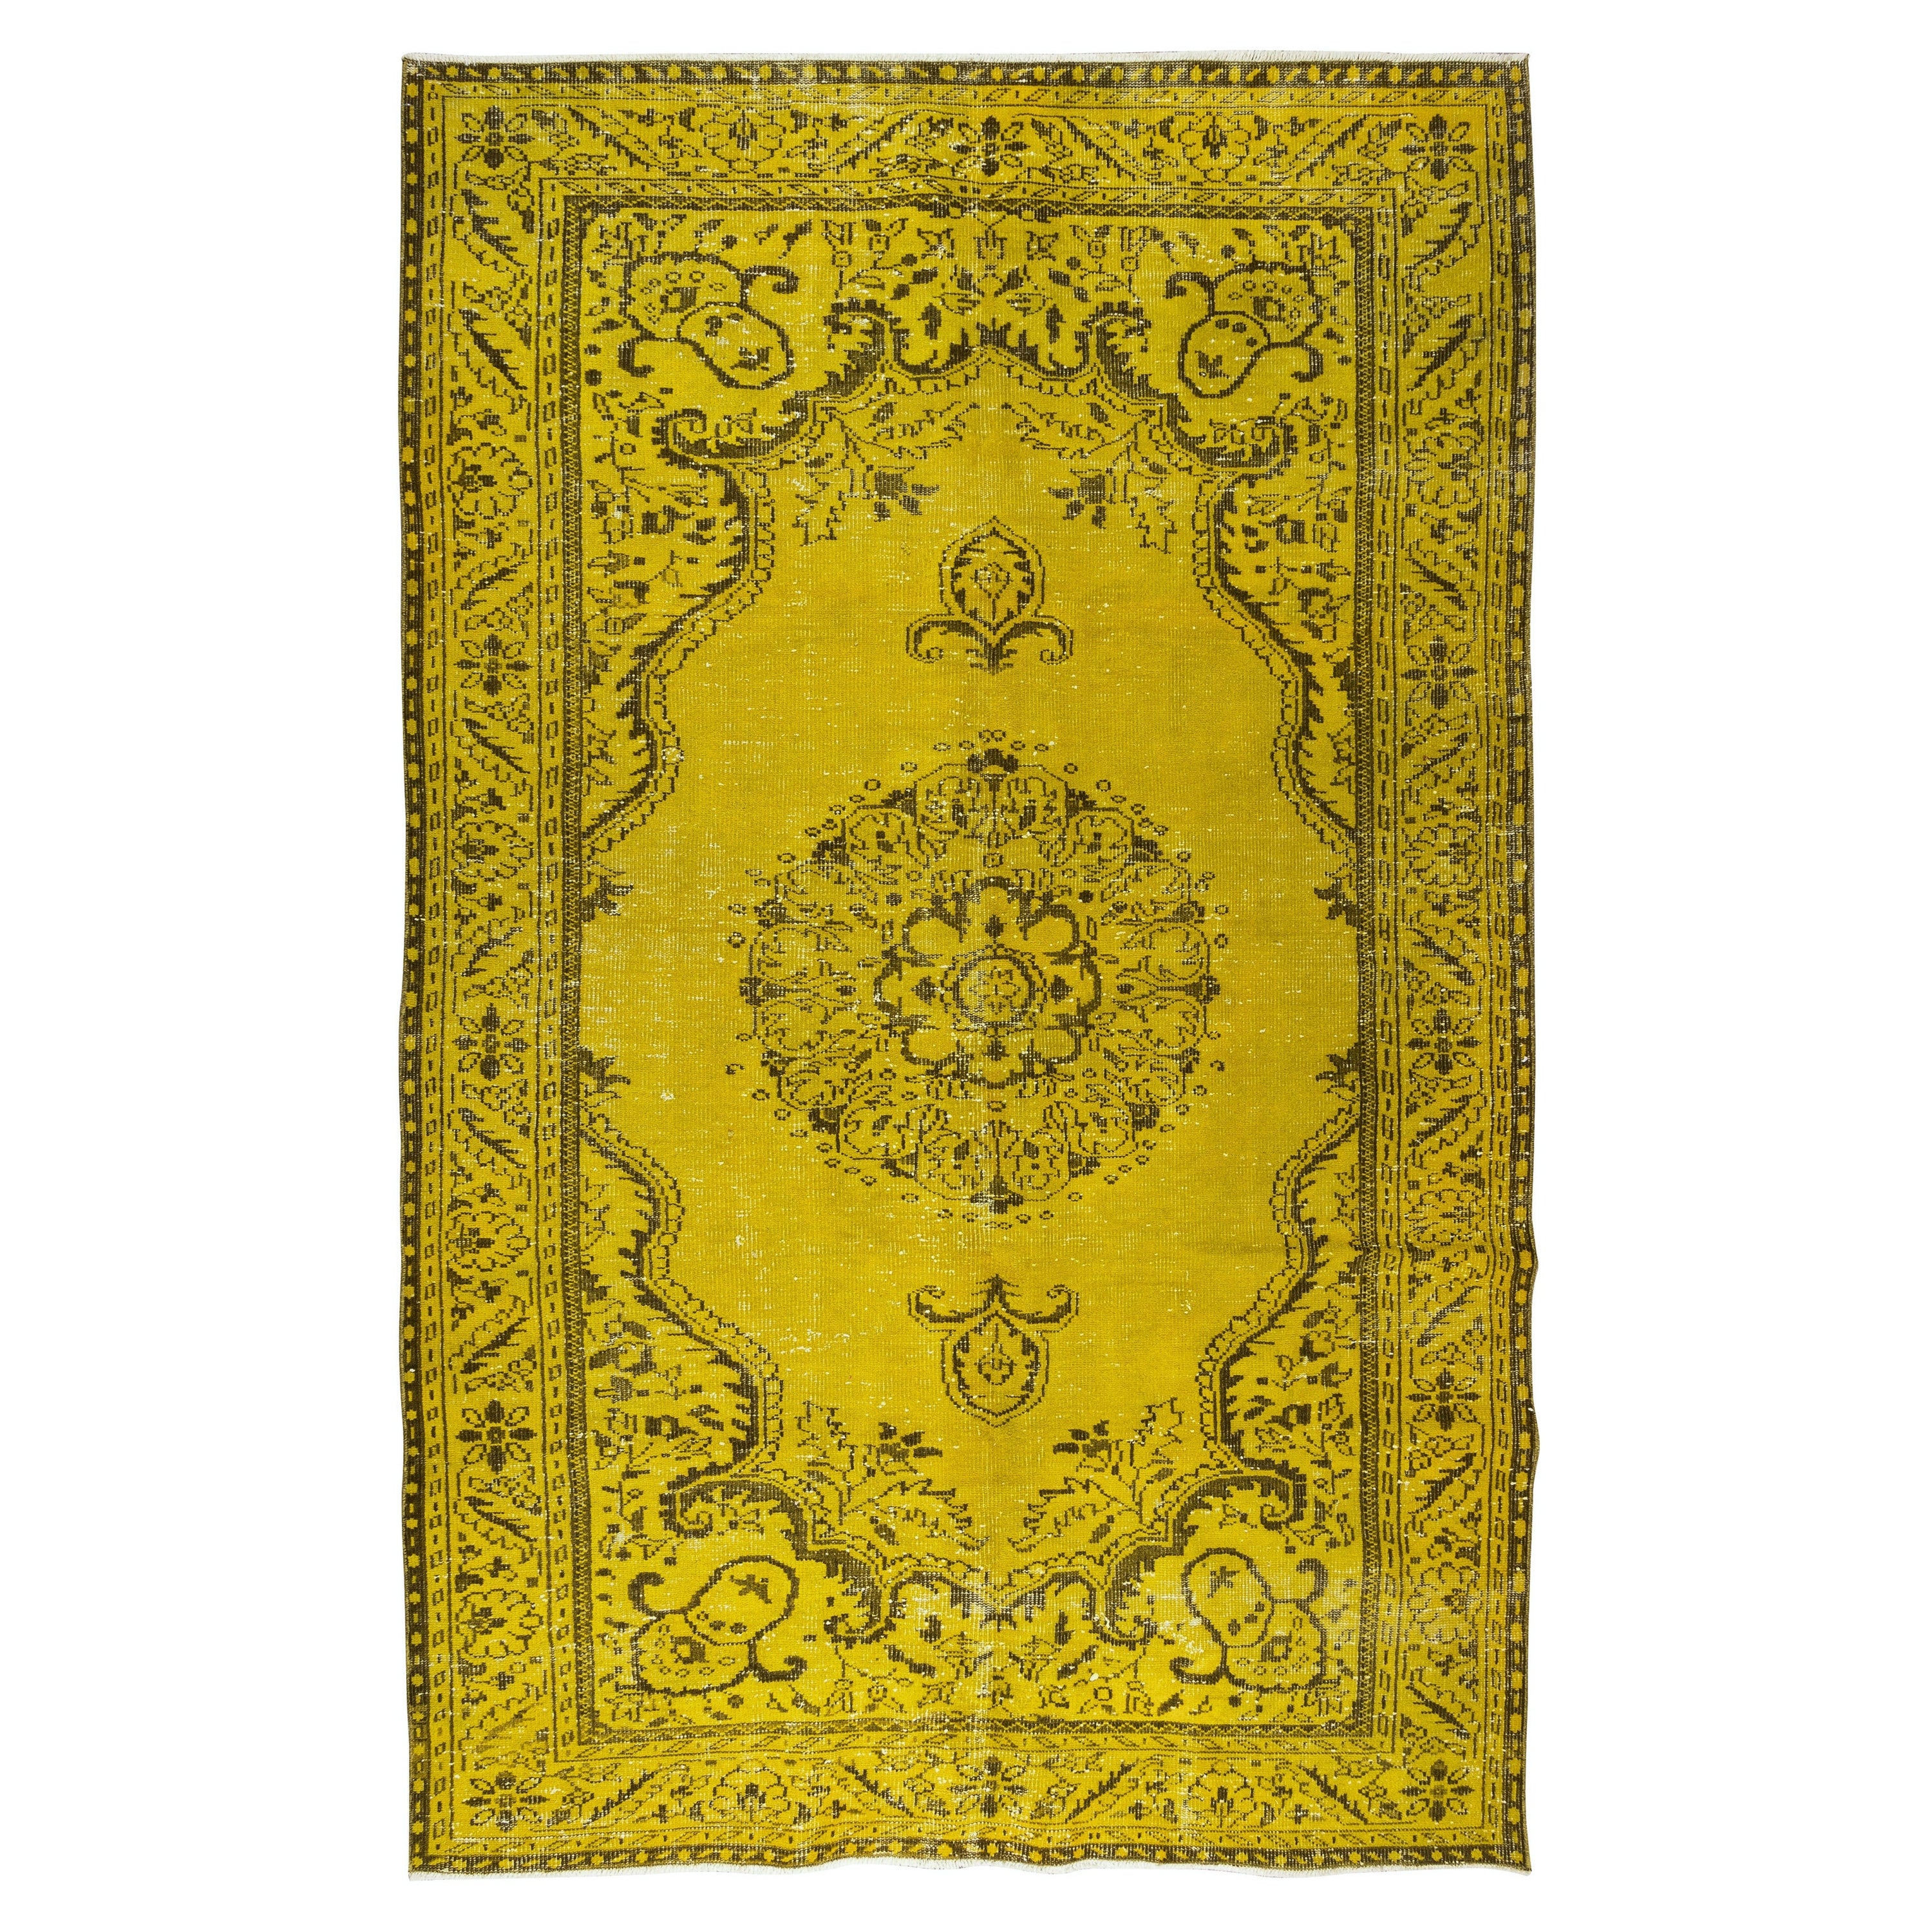 6.2x10.3 Ft Tapis jaune. Tapis turc vintage fait à la main, décoration moderne de la maison